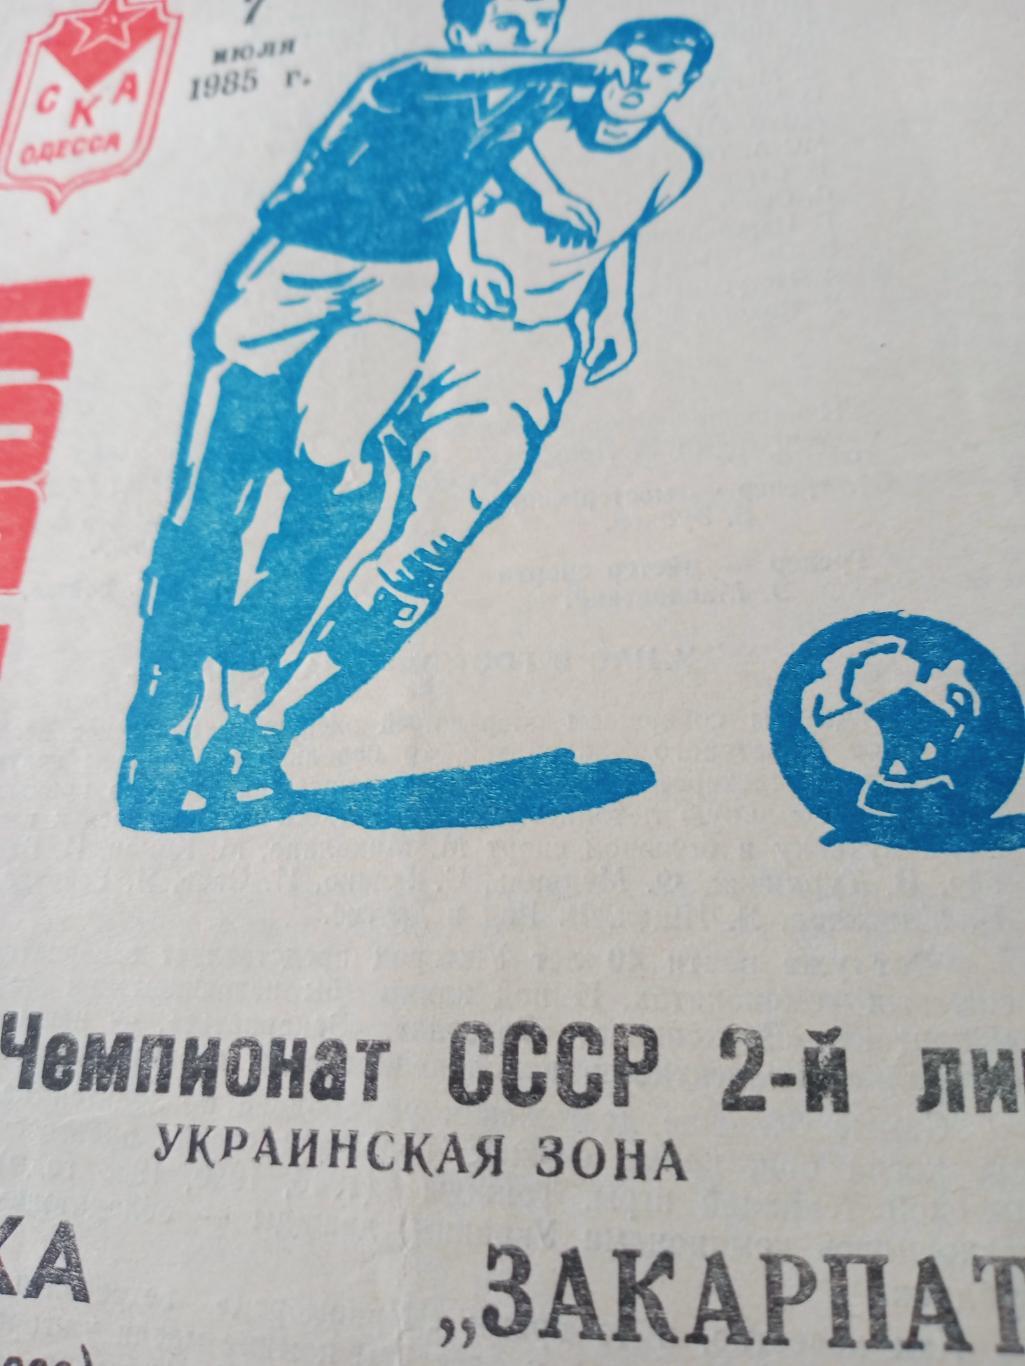 СКА Одесса - Закарпатье Ужгород. 7 июля 1985 год